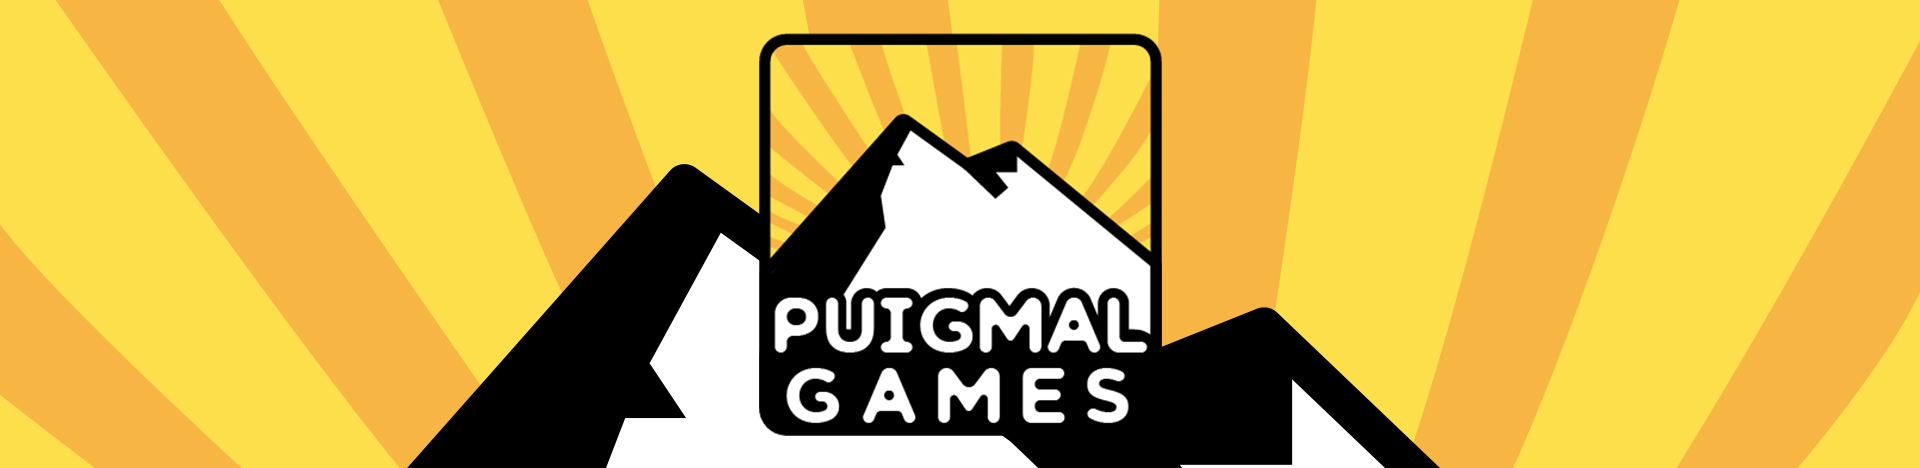 WEB PROGRESS Création de logo pour PUIGMAL Games